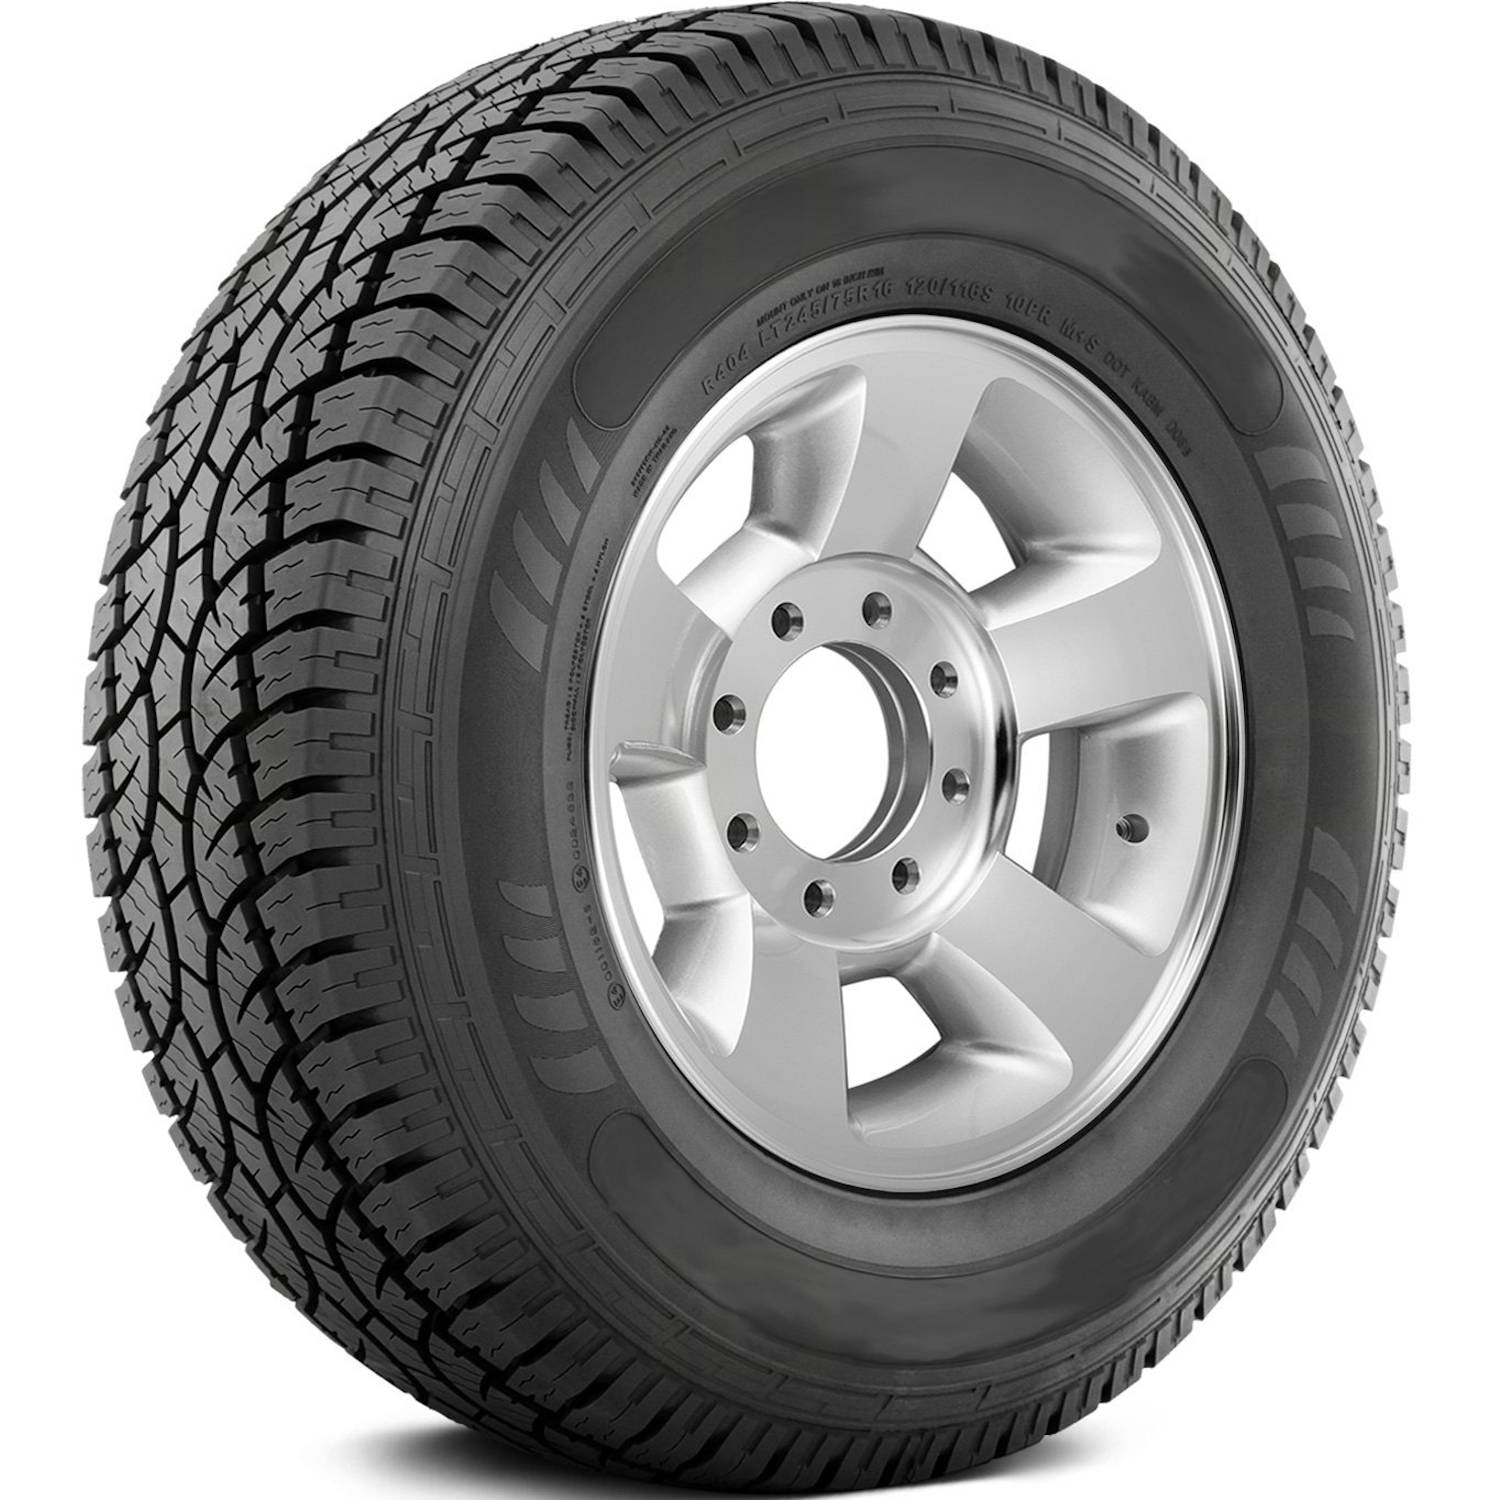 AMERICUS RUGGED ALL TERRAIN 265/70R16 (30.6X10.4R 16) Tires